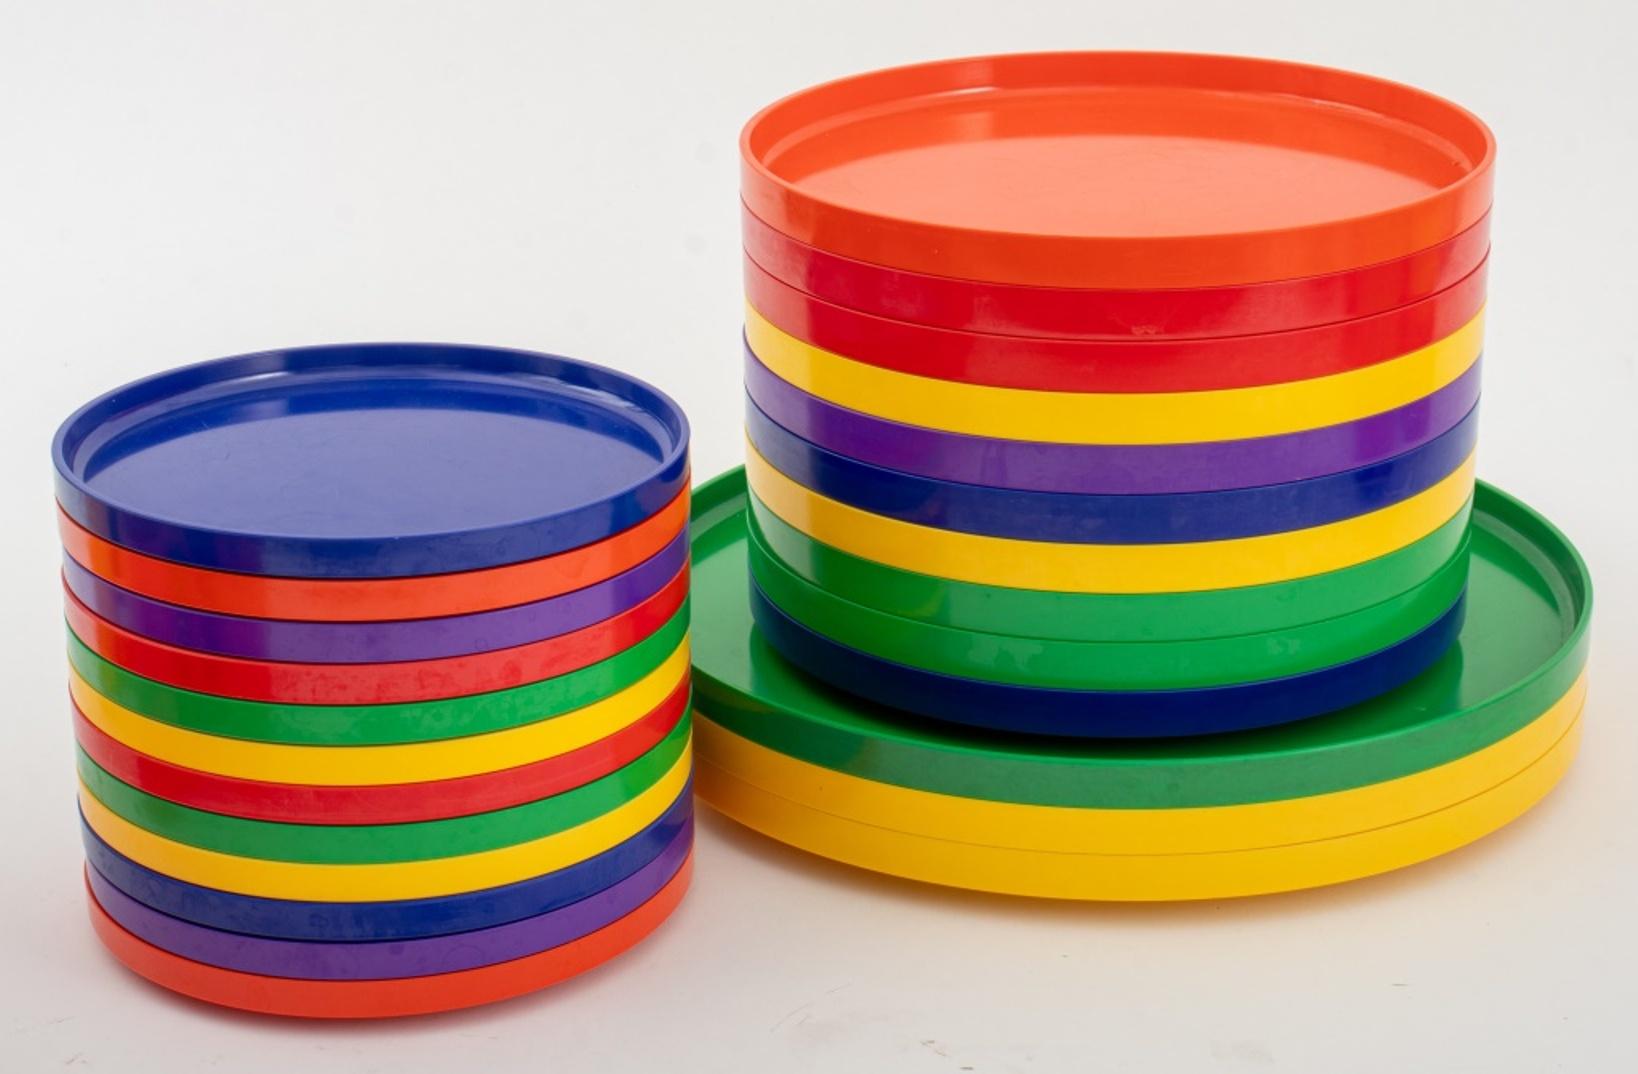 Massimo Vignelli (italien, 1931-2014) pour Heller service de vaisselle en plastique polychrome douze (12) petites assiettes, six (6) tasses à anses, huit (8) bols, trois (3) grandes assiettes plates, dix (10) plats à déjeuner. Chaque pièce porte la